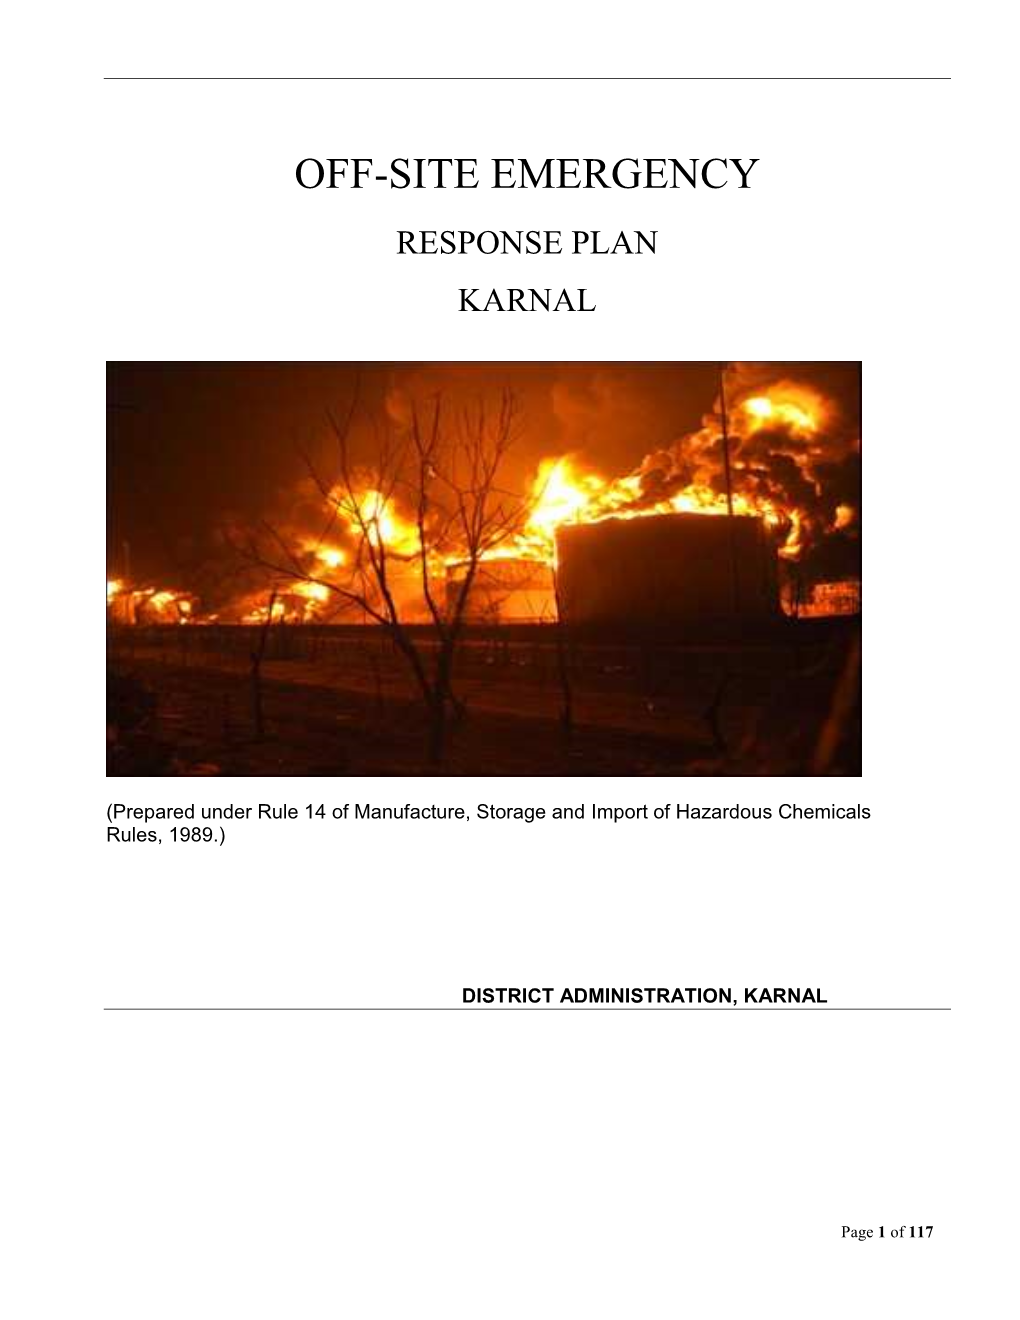 Off-Site Emergency Response Plan Karnal